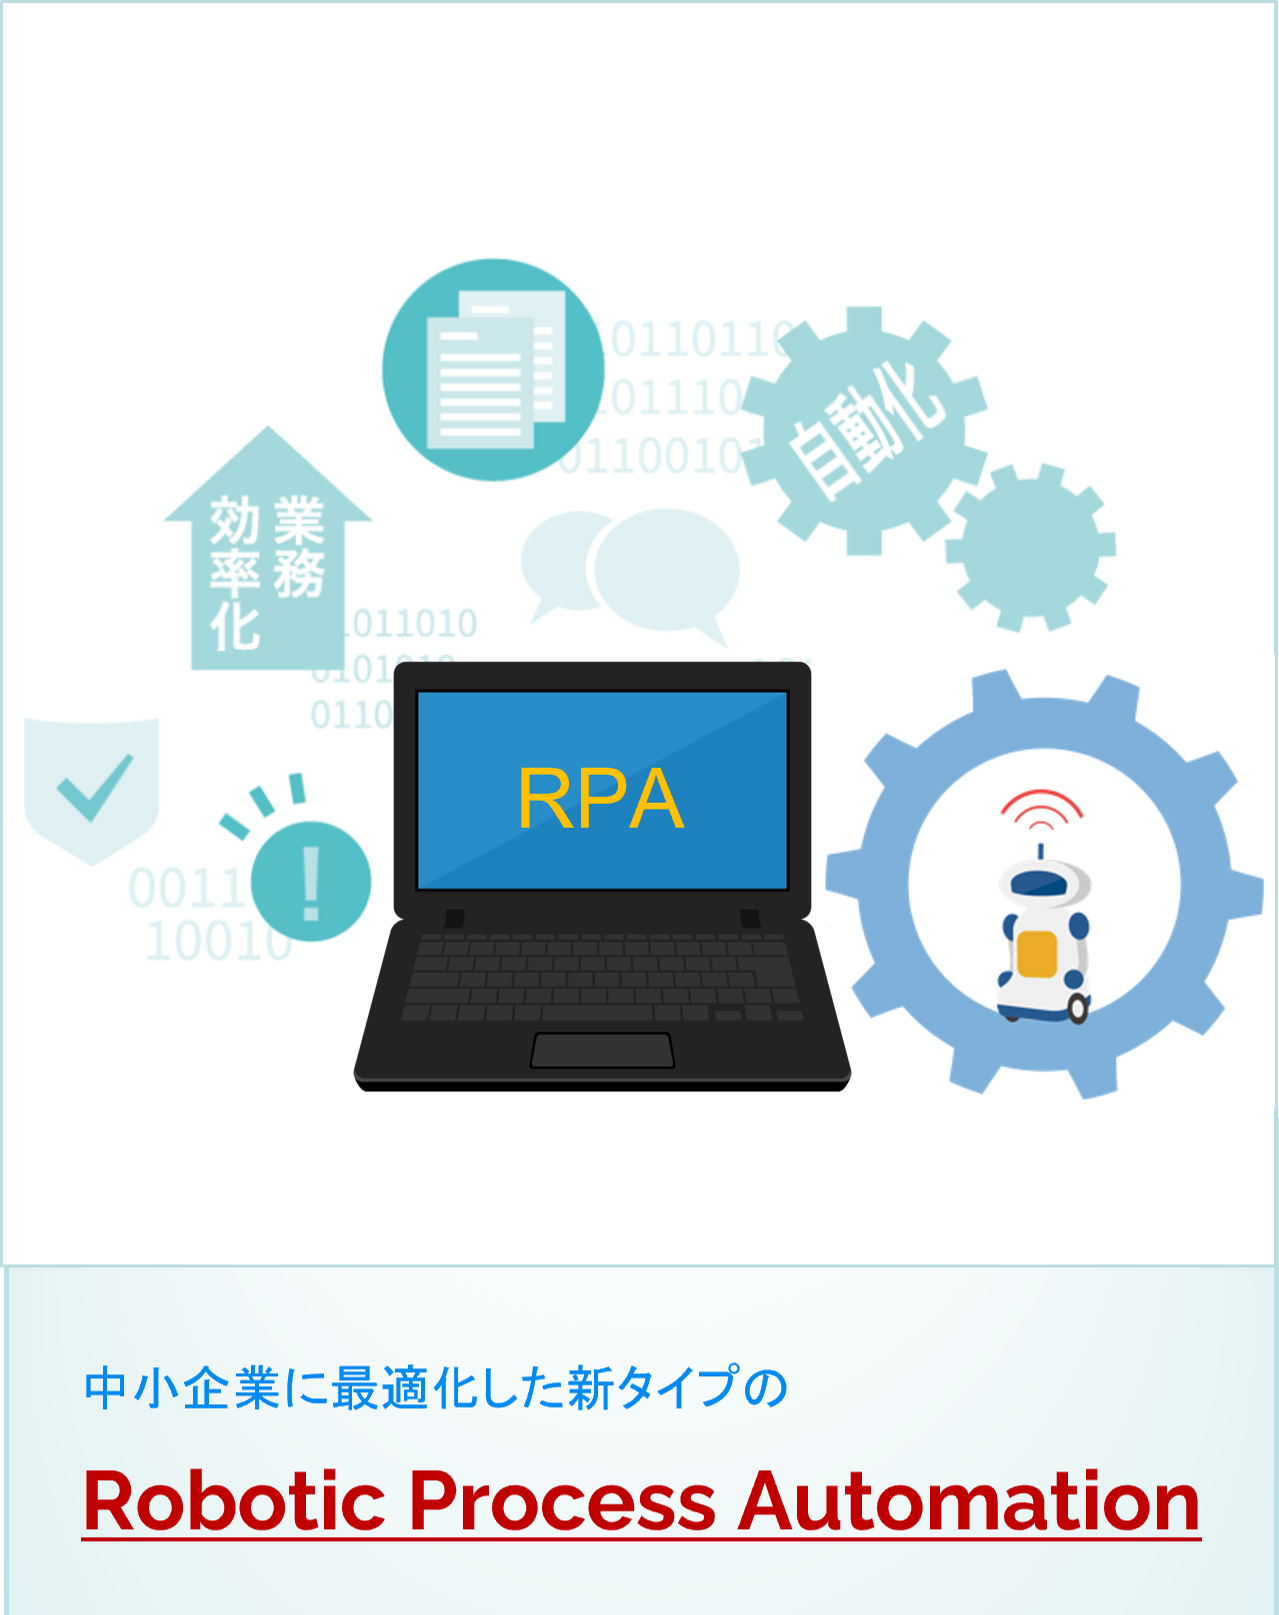 RPAは福岡のアンソネット